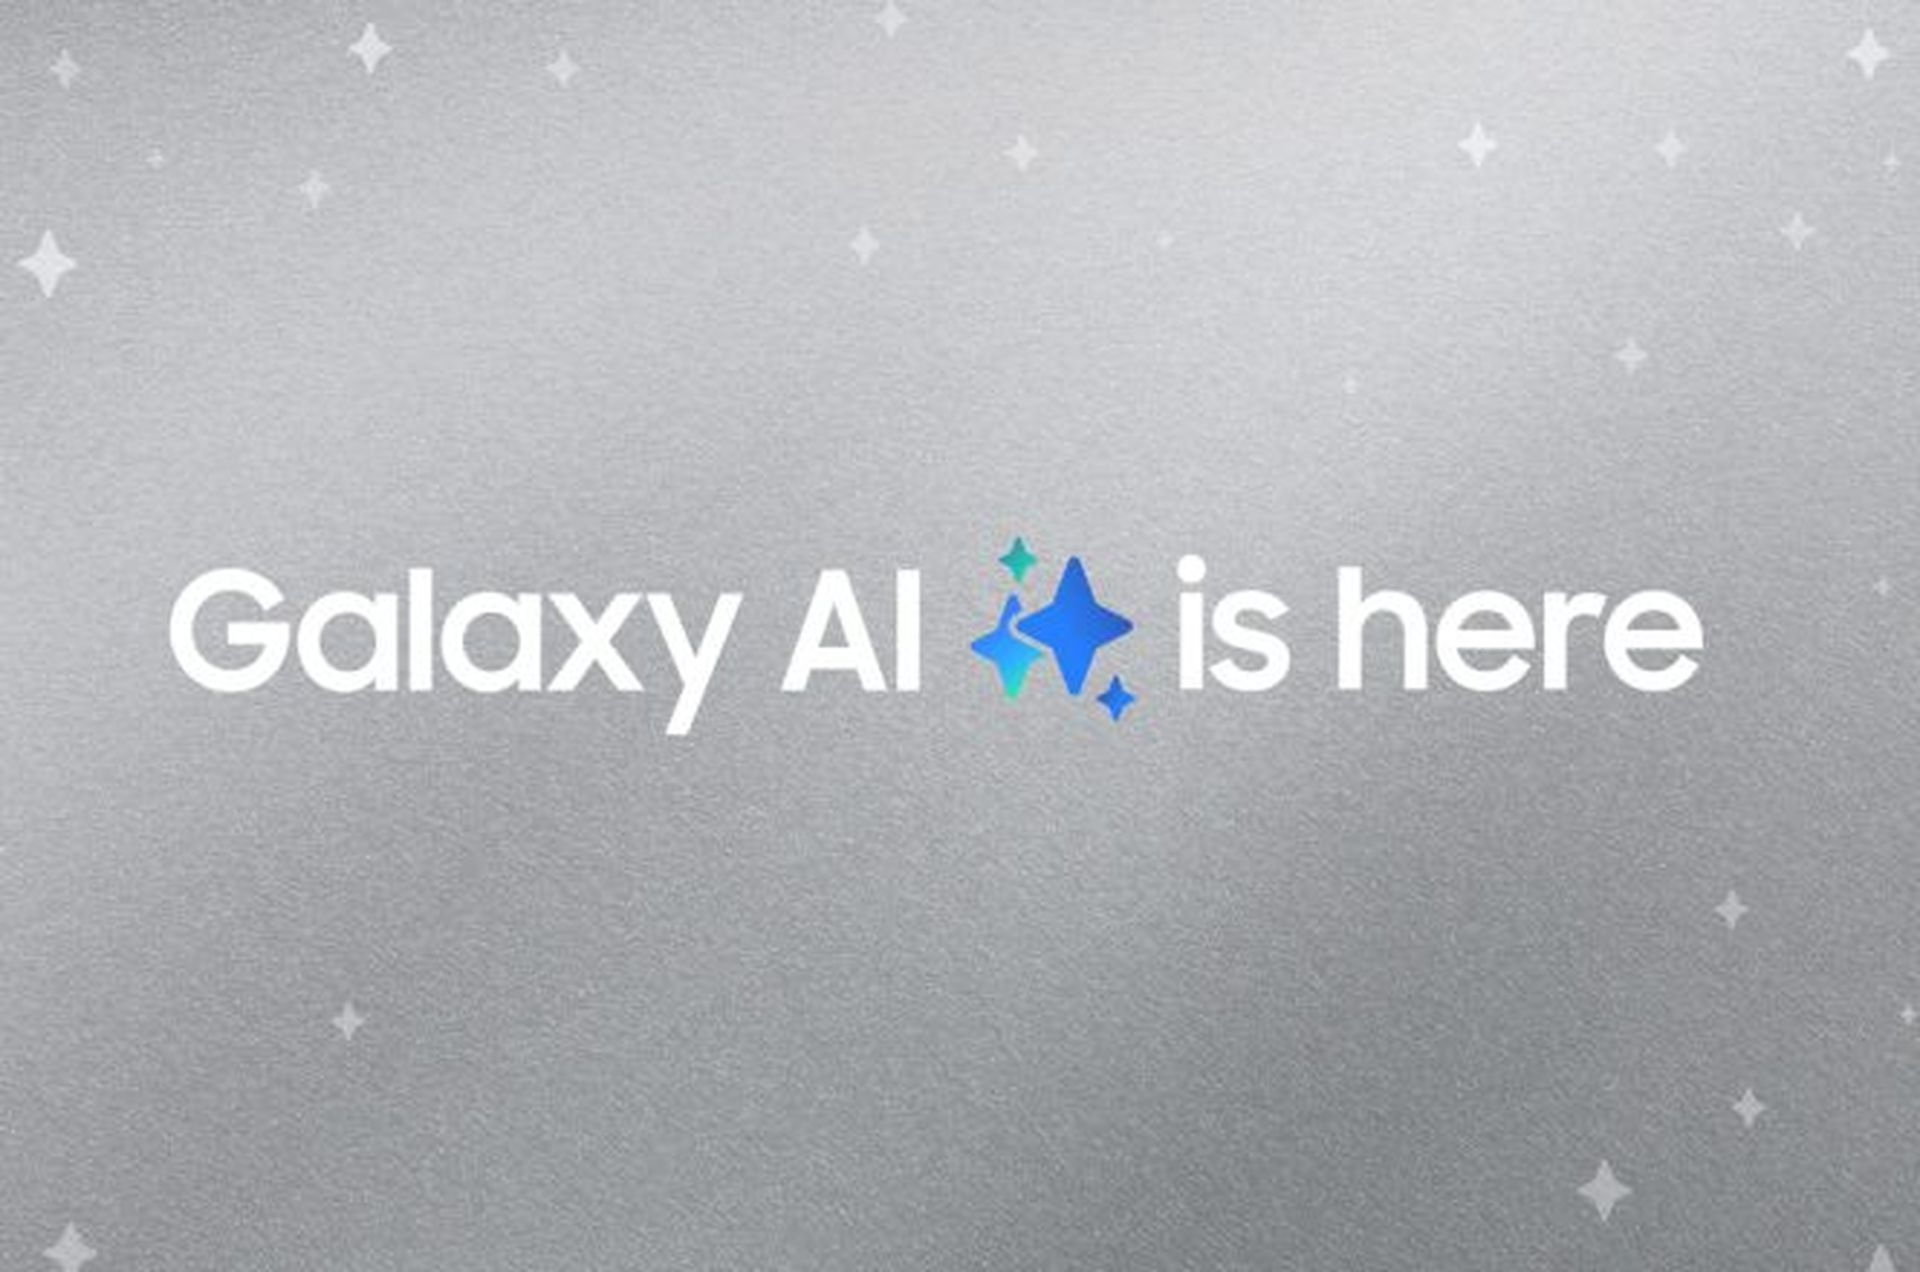 Galaxy AI: All the AI features rumored so far